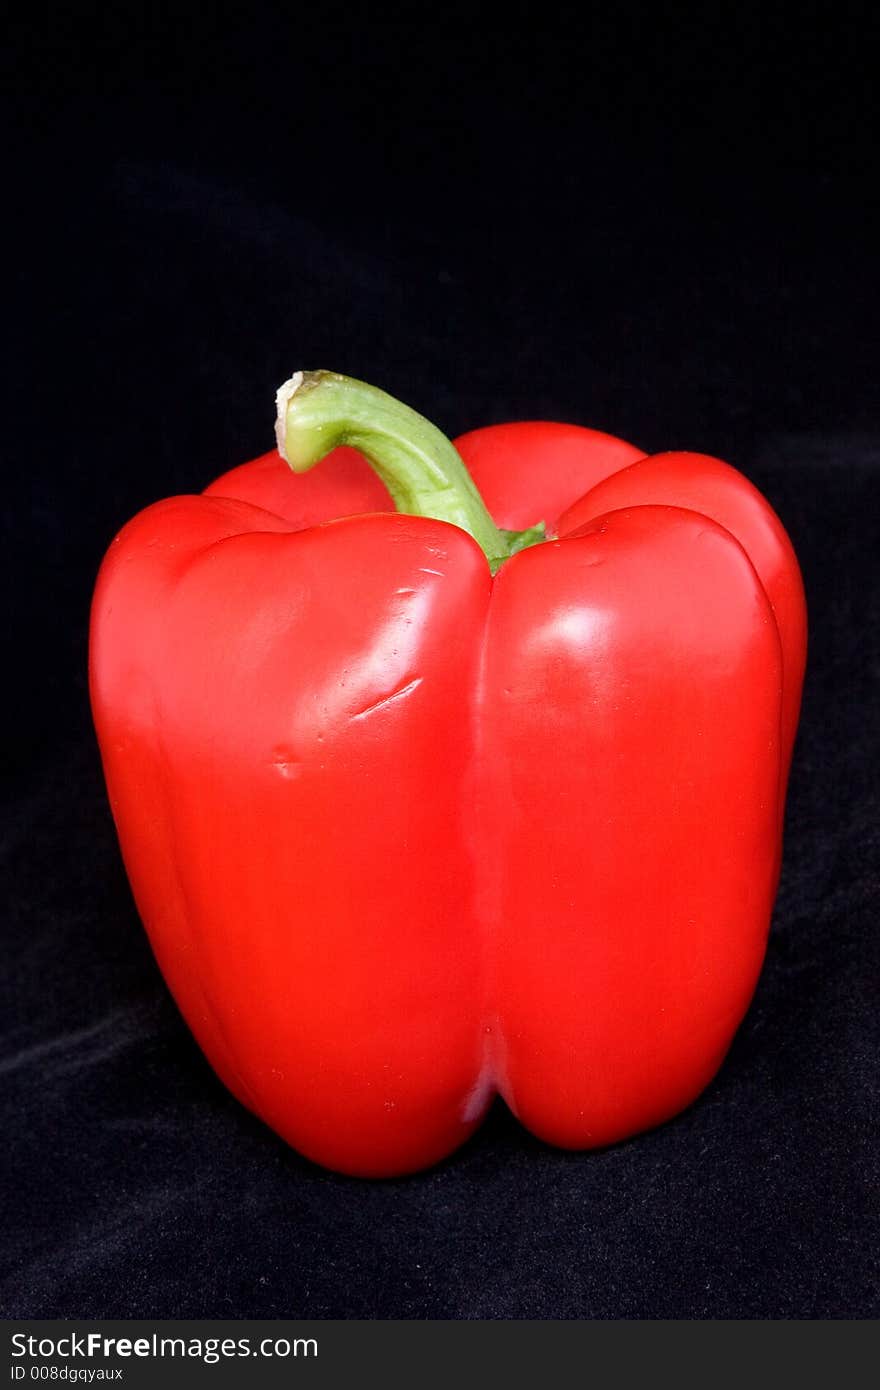 Red bell pepper on a black velvet background.